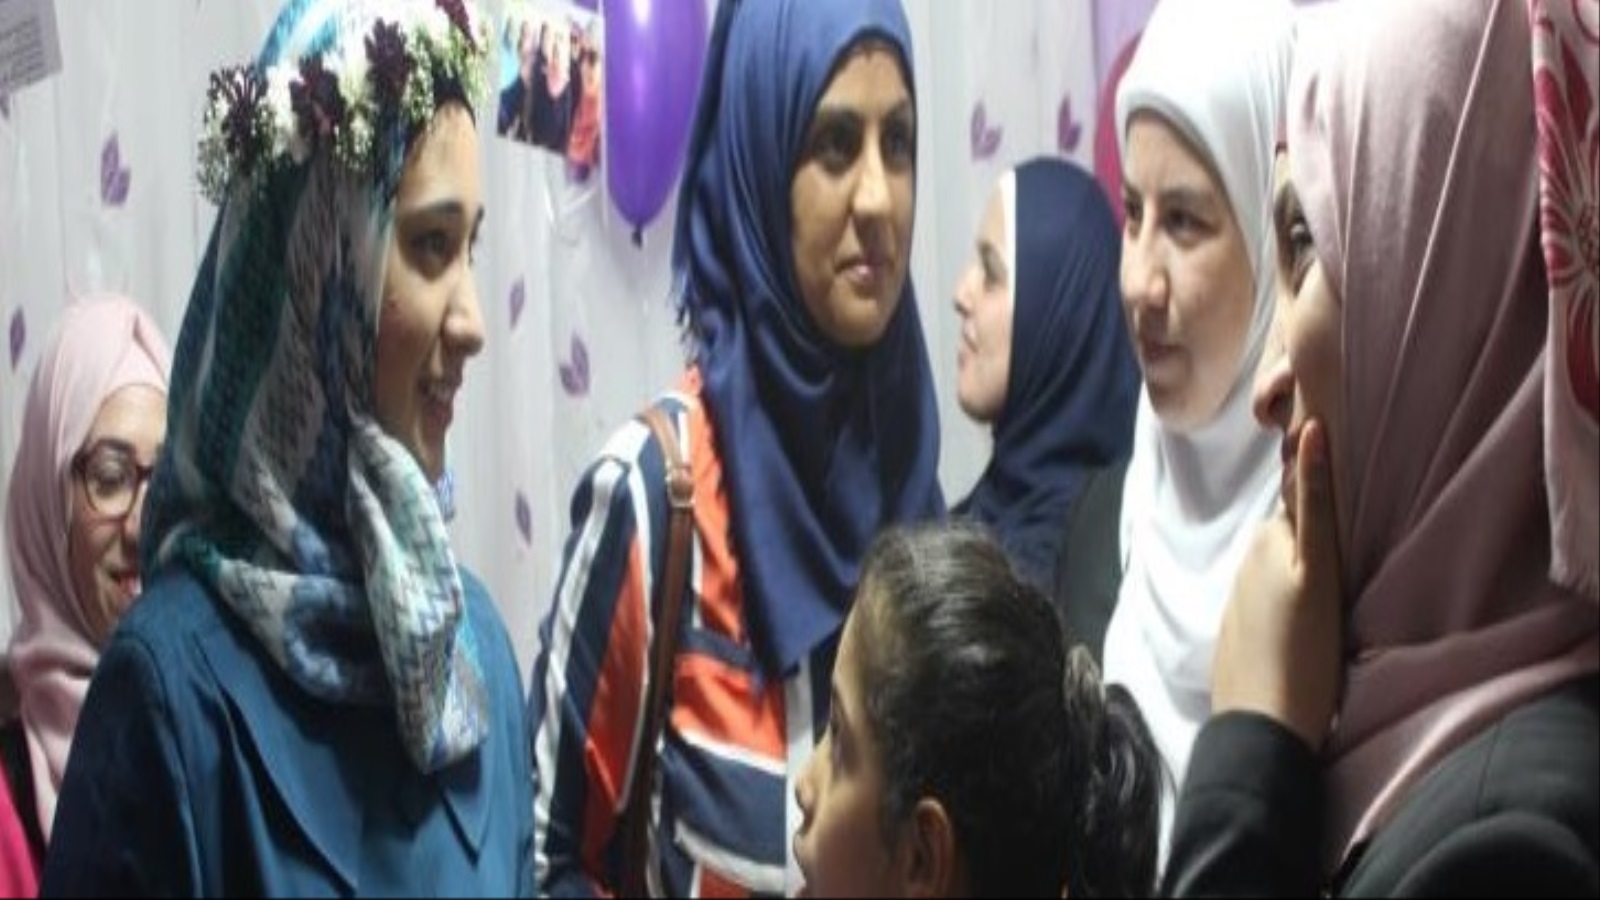 ‪خروج المرأة الفلسطينية للعمل والدراسة أثّر على معدلات الإنجاب‬ خروج المرأة الفلسطينية للعمل والدراسة أثّر على معدلات الإنجاب (الجزيرة)